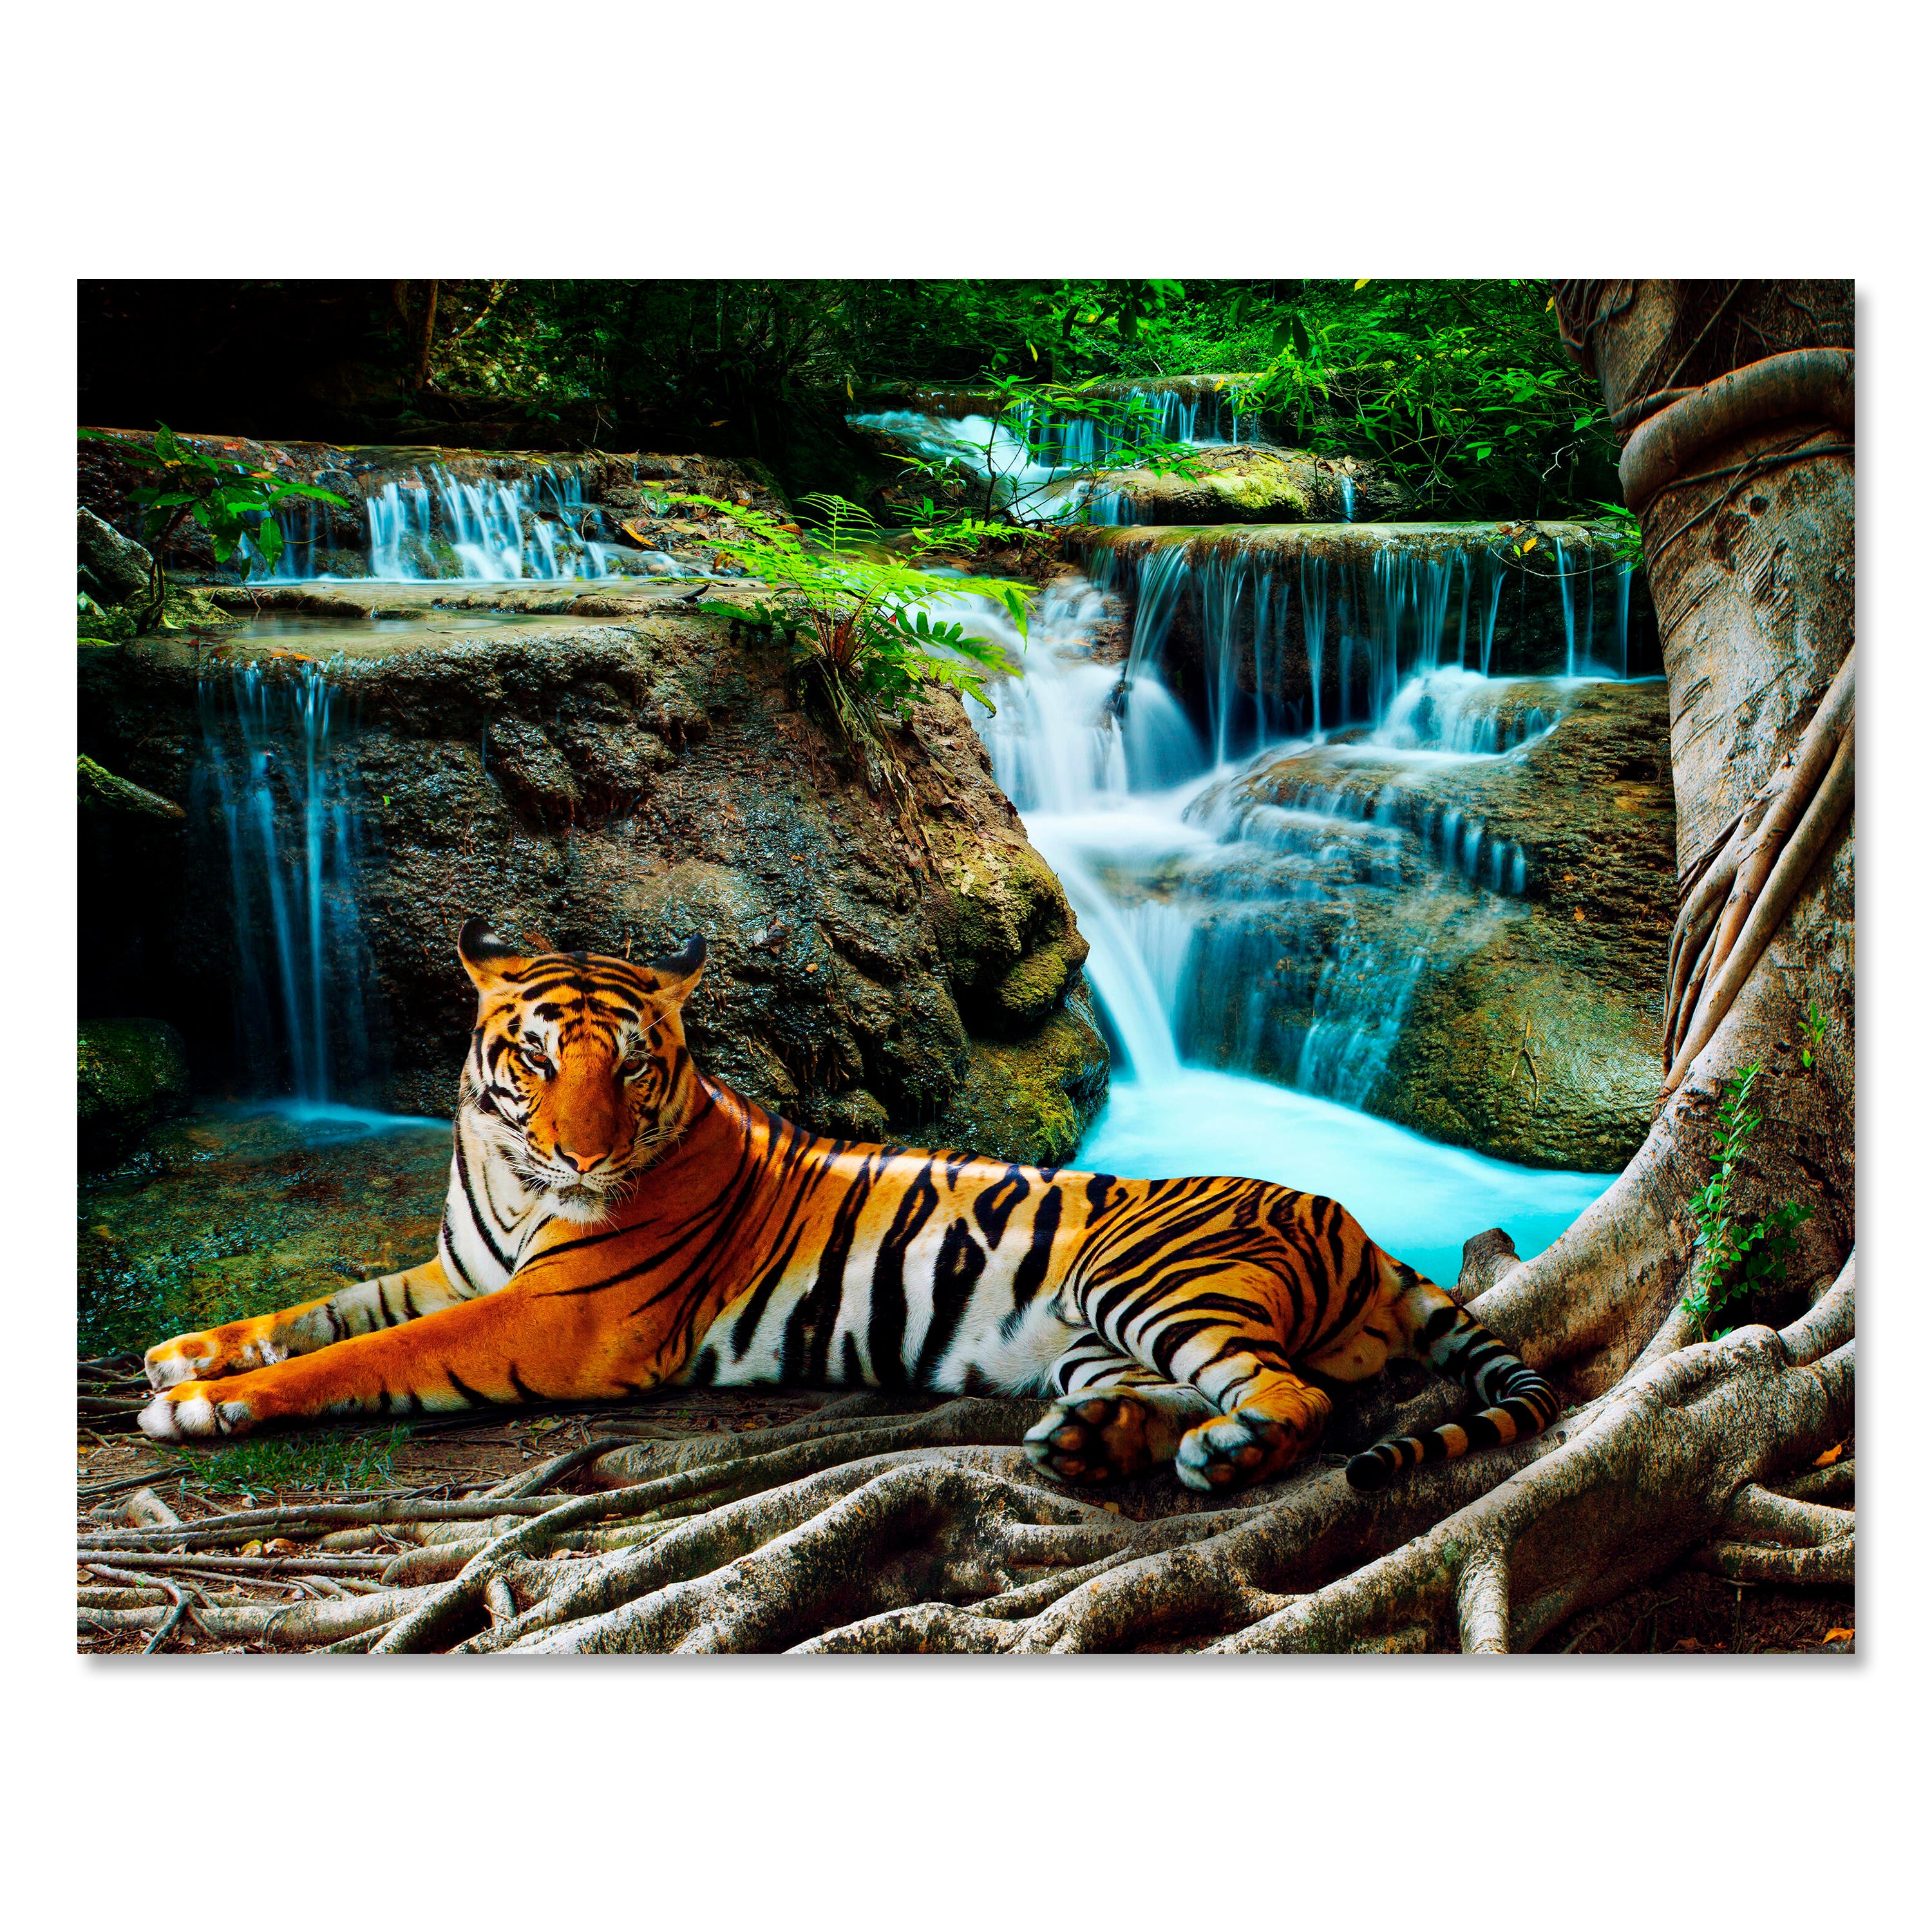 Leinwandbild Tiere, Querformat, Tiger Wasserfall M0098 kaufen - Bild 1